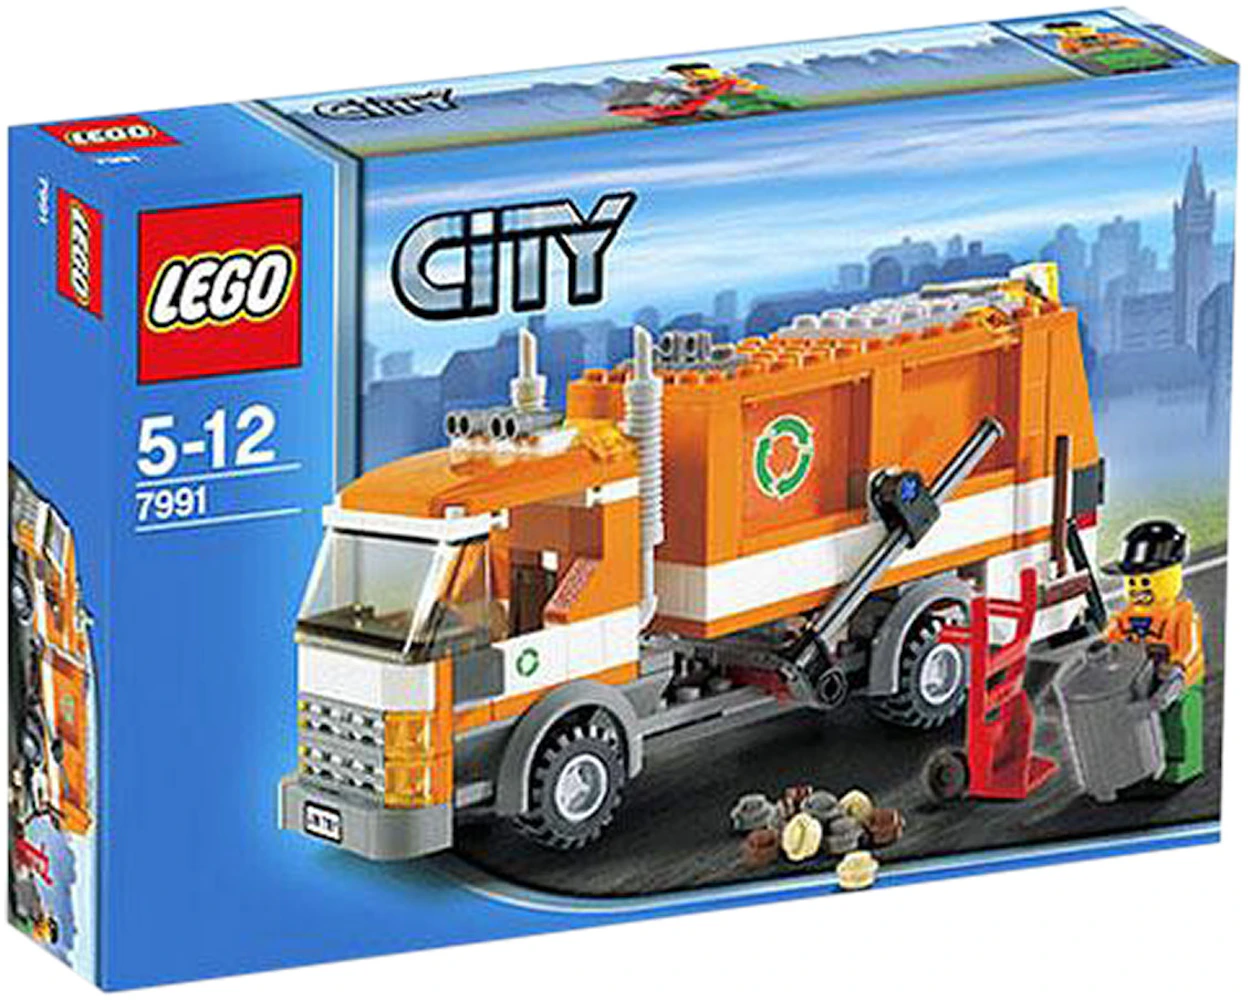 galop bemærkede ikke positur LEGO City Garbage Truck Set 7991 - US